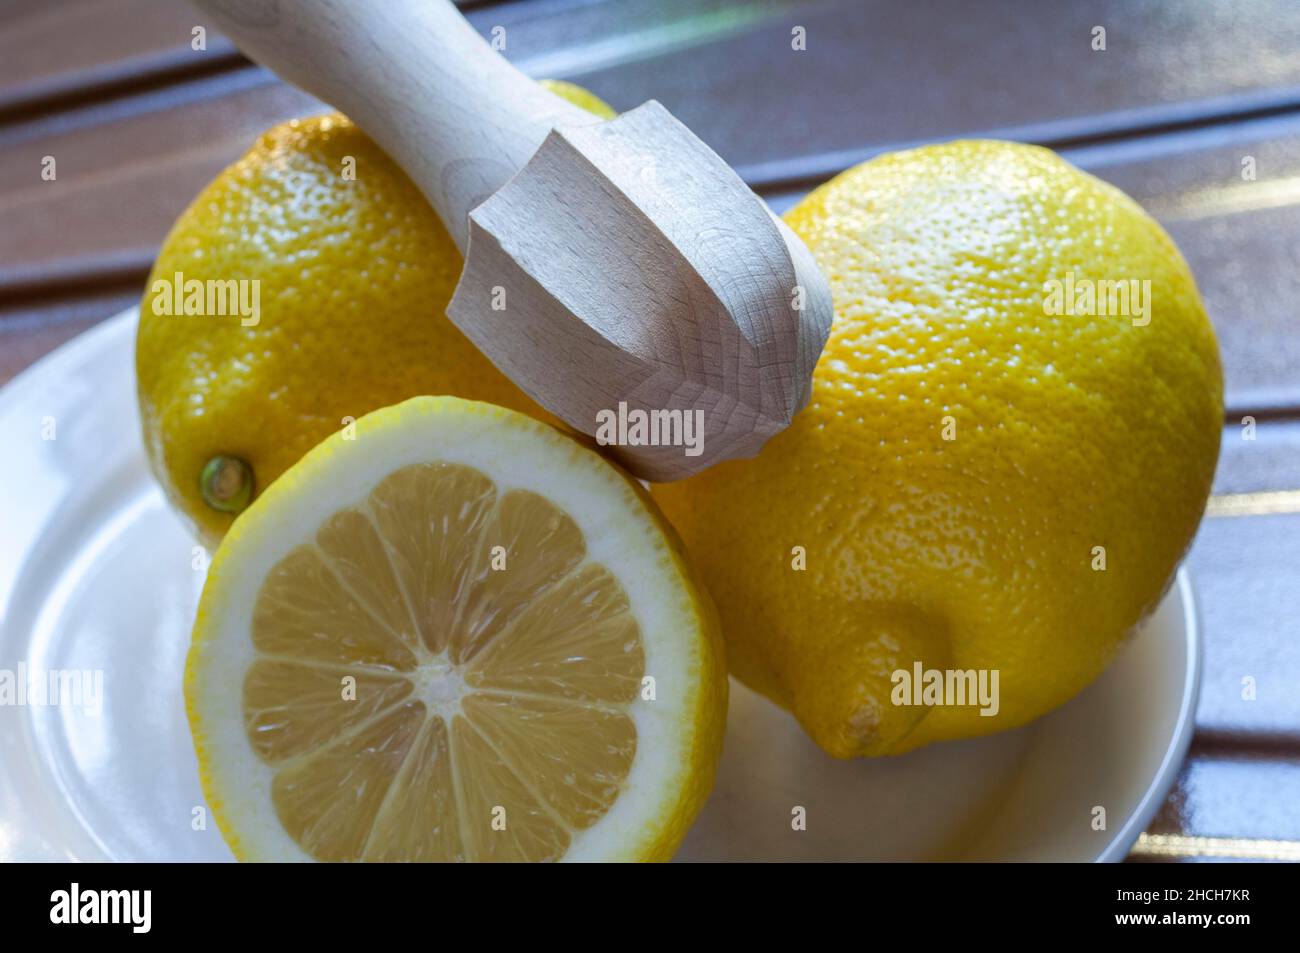 Tre limoni gialli su un piatto, spremiagrumi in legno, limone dimezzato Foto Stock